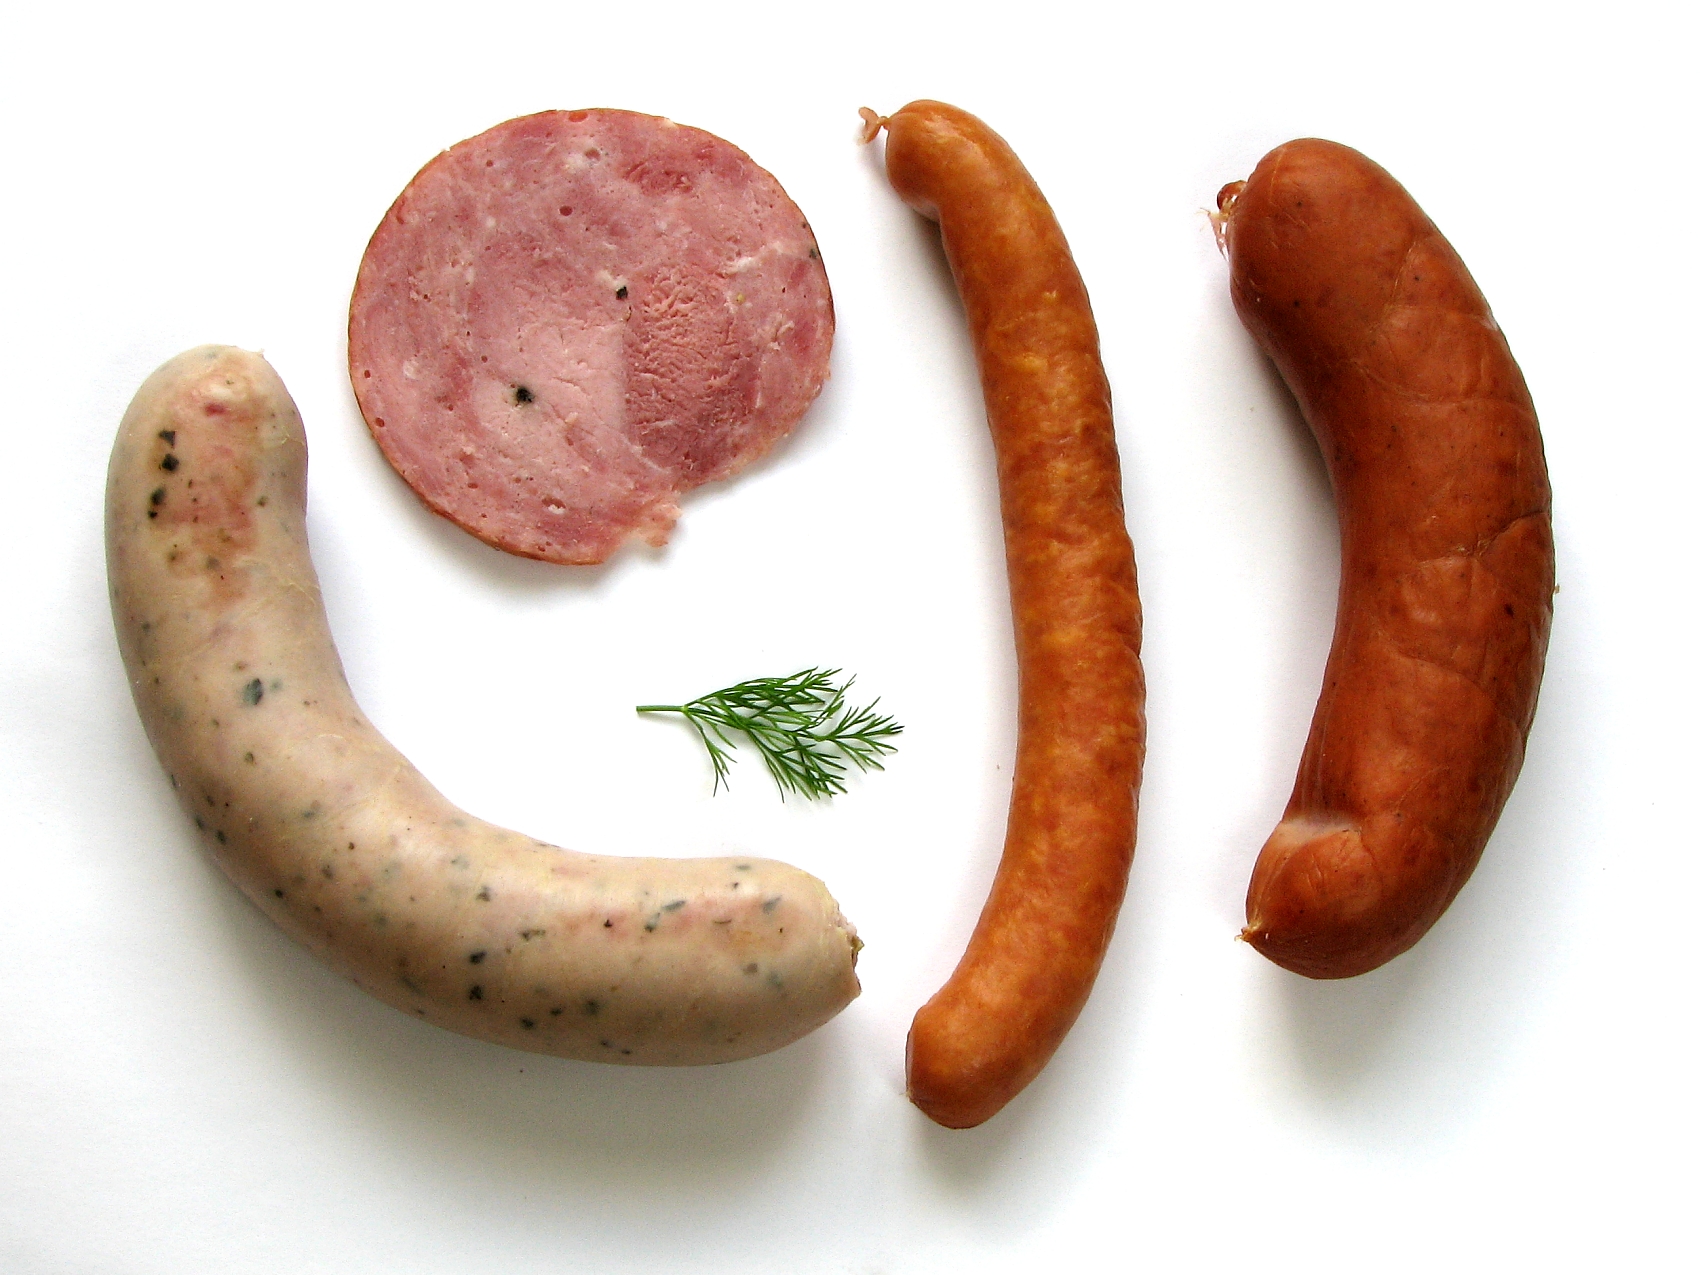 Sausage Race - Wikipedia